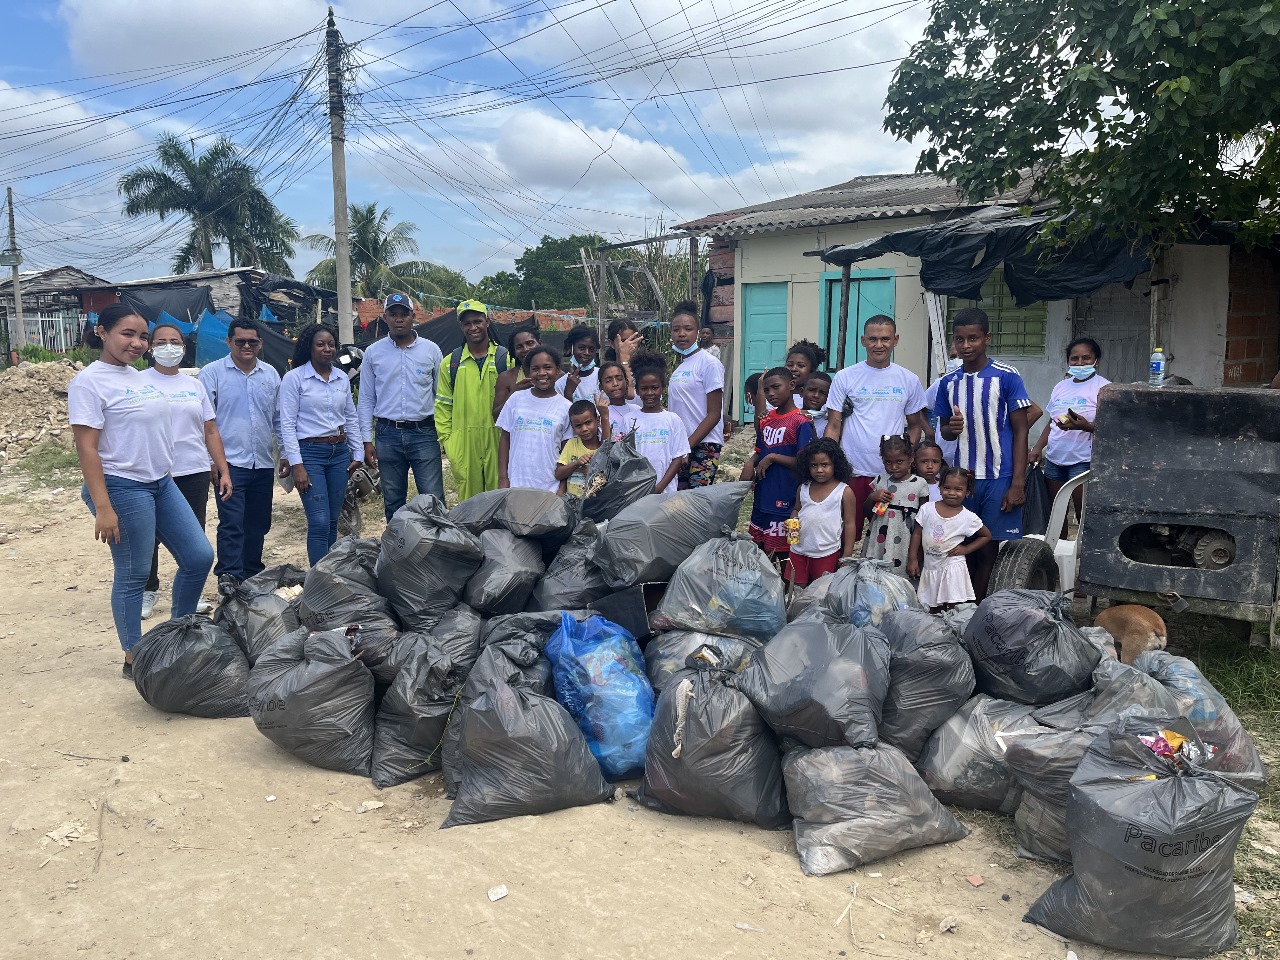 Funcionarios y comunidad en jornada de limpieza en el barrio Olaya Herrera